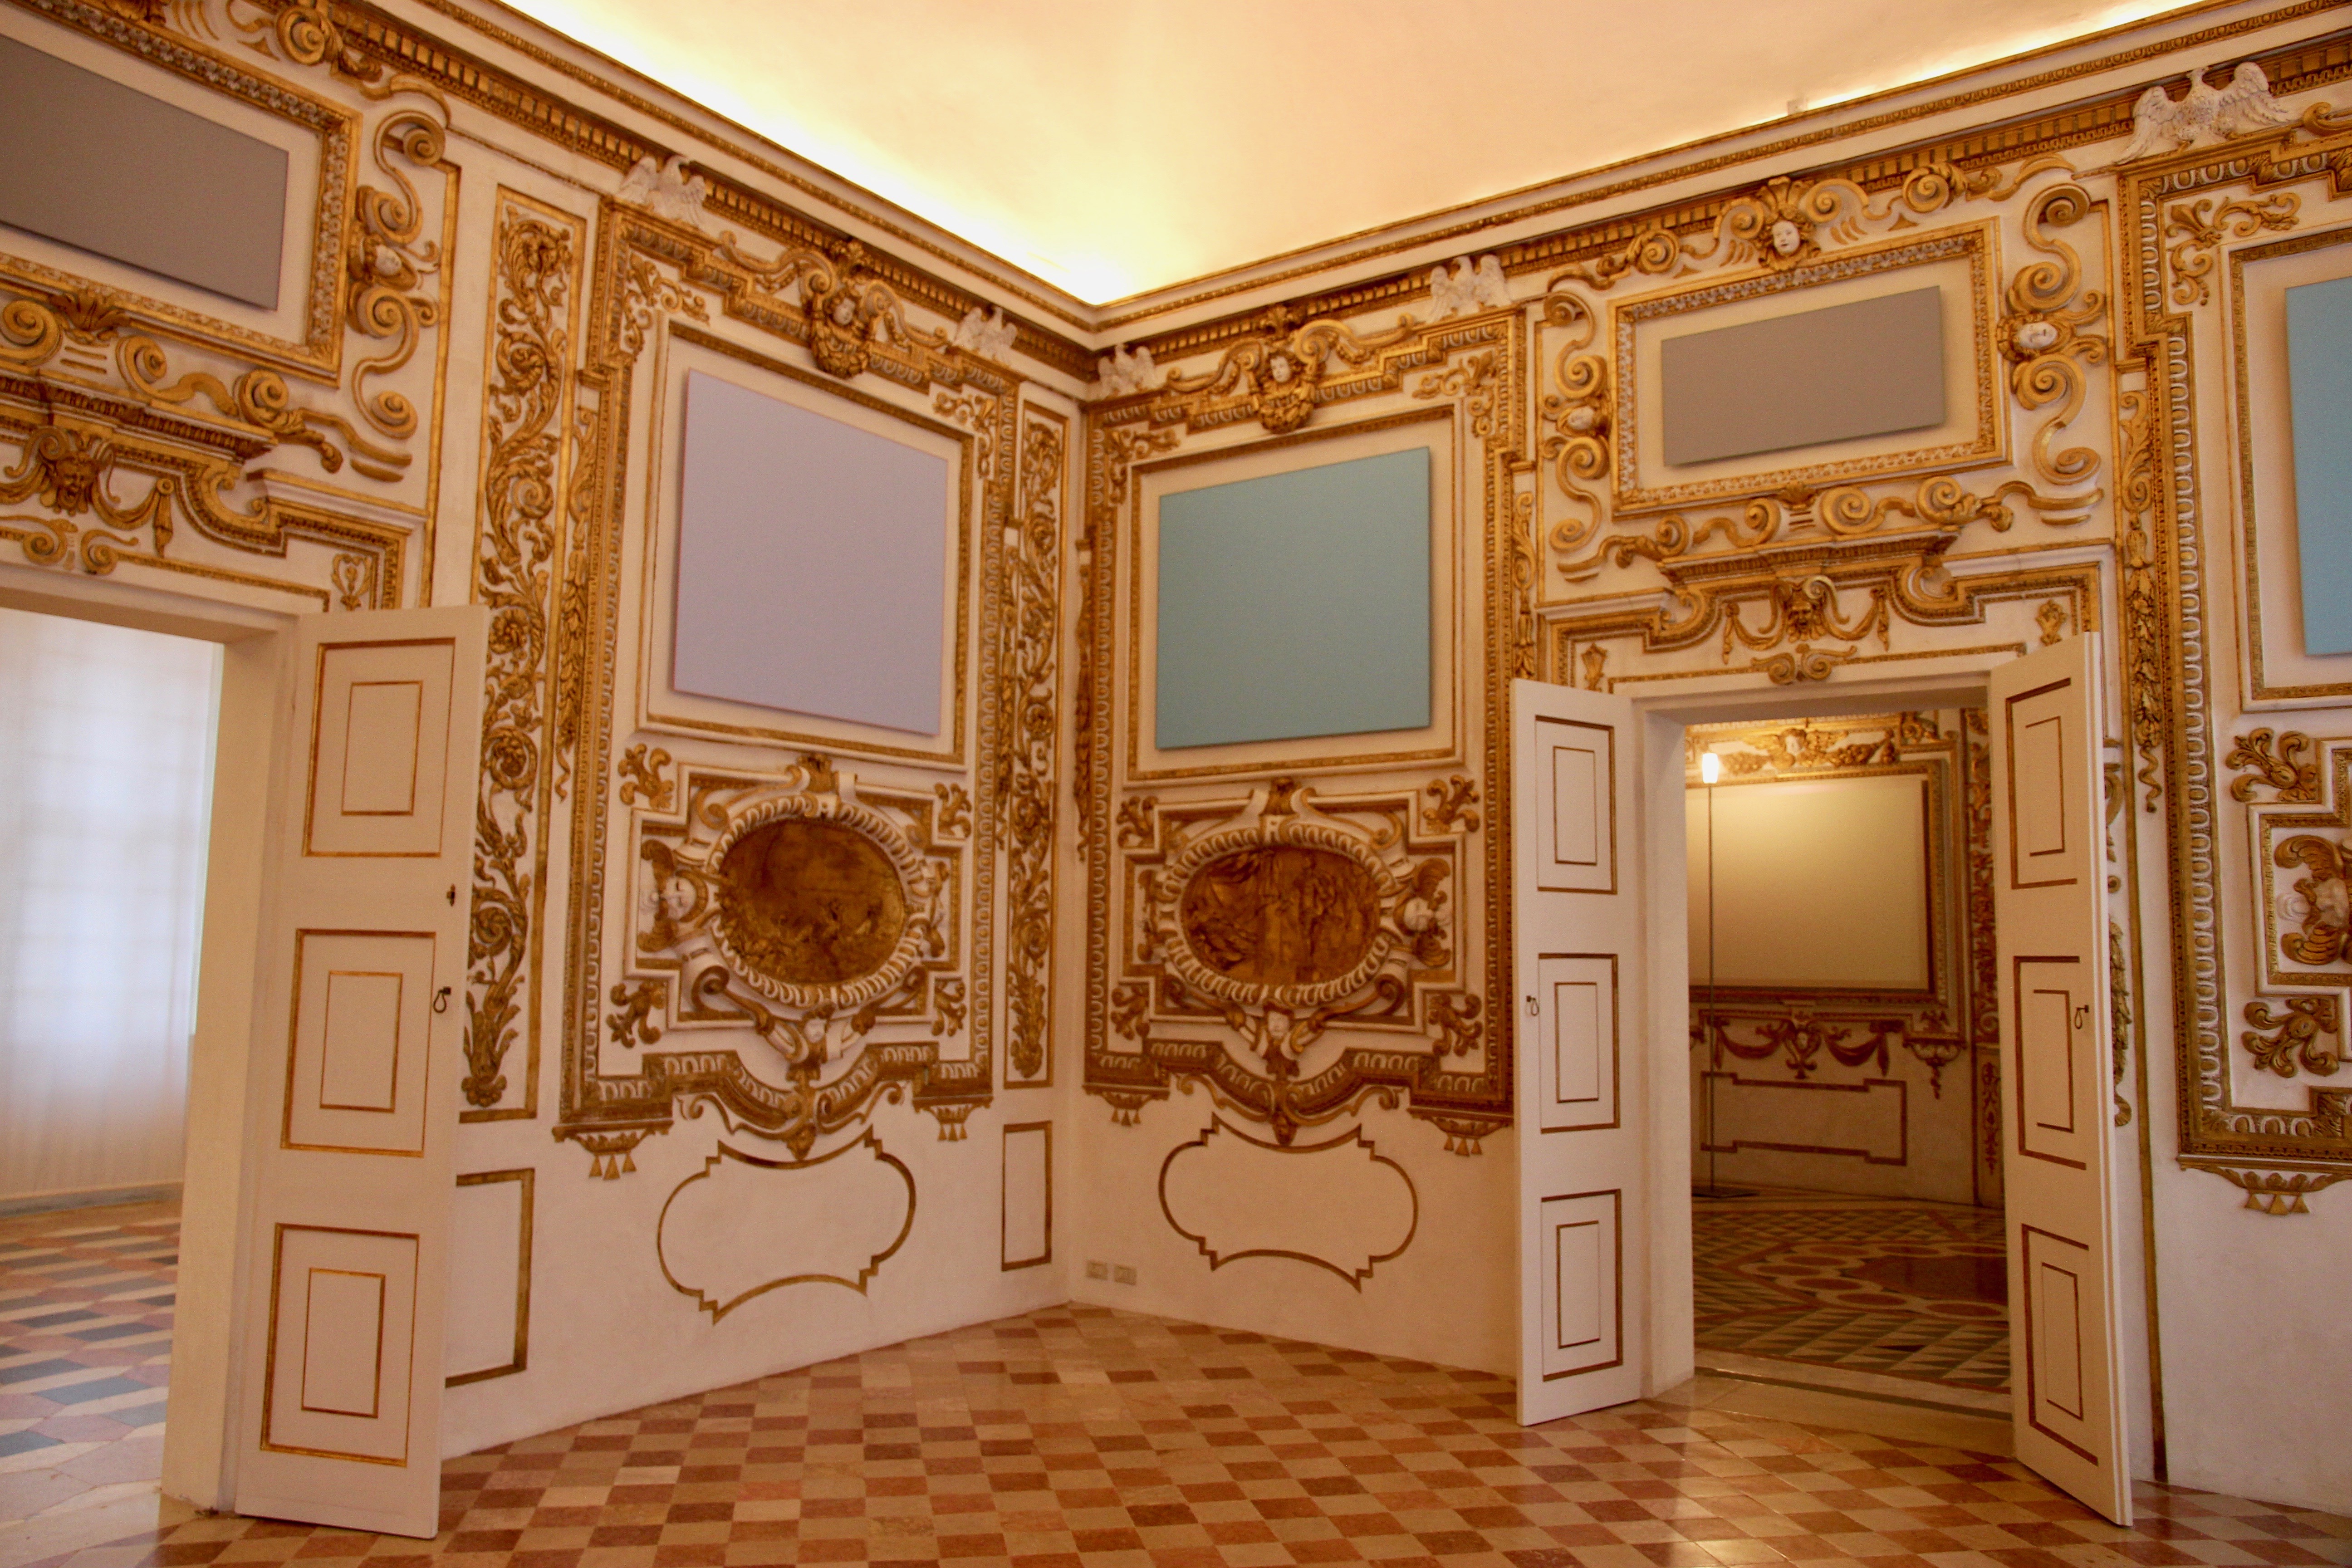 Visita guidata al palazzo Ducale di Sassuolo